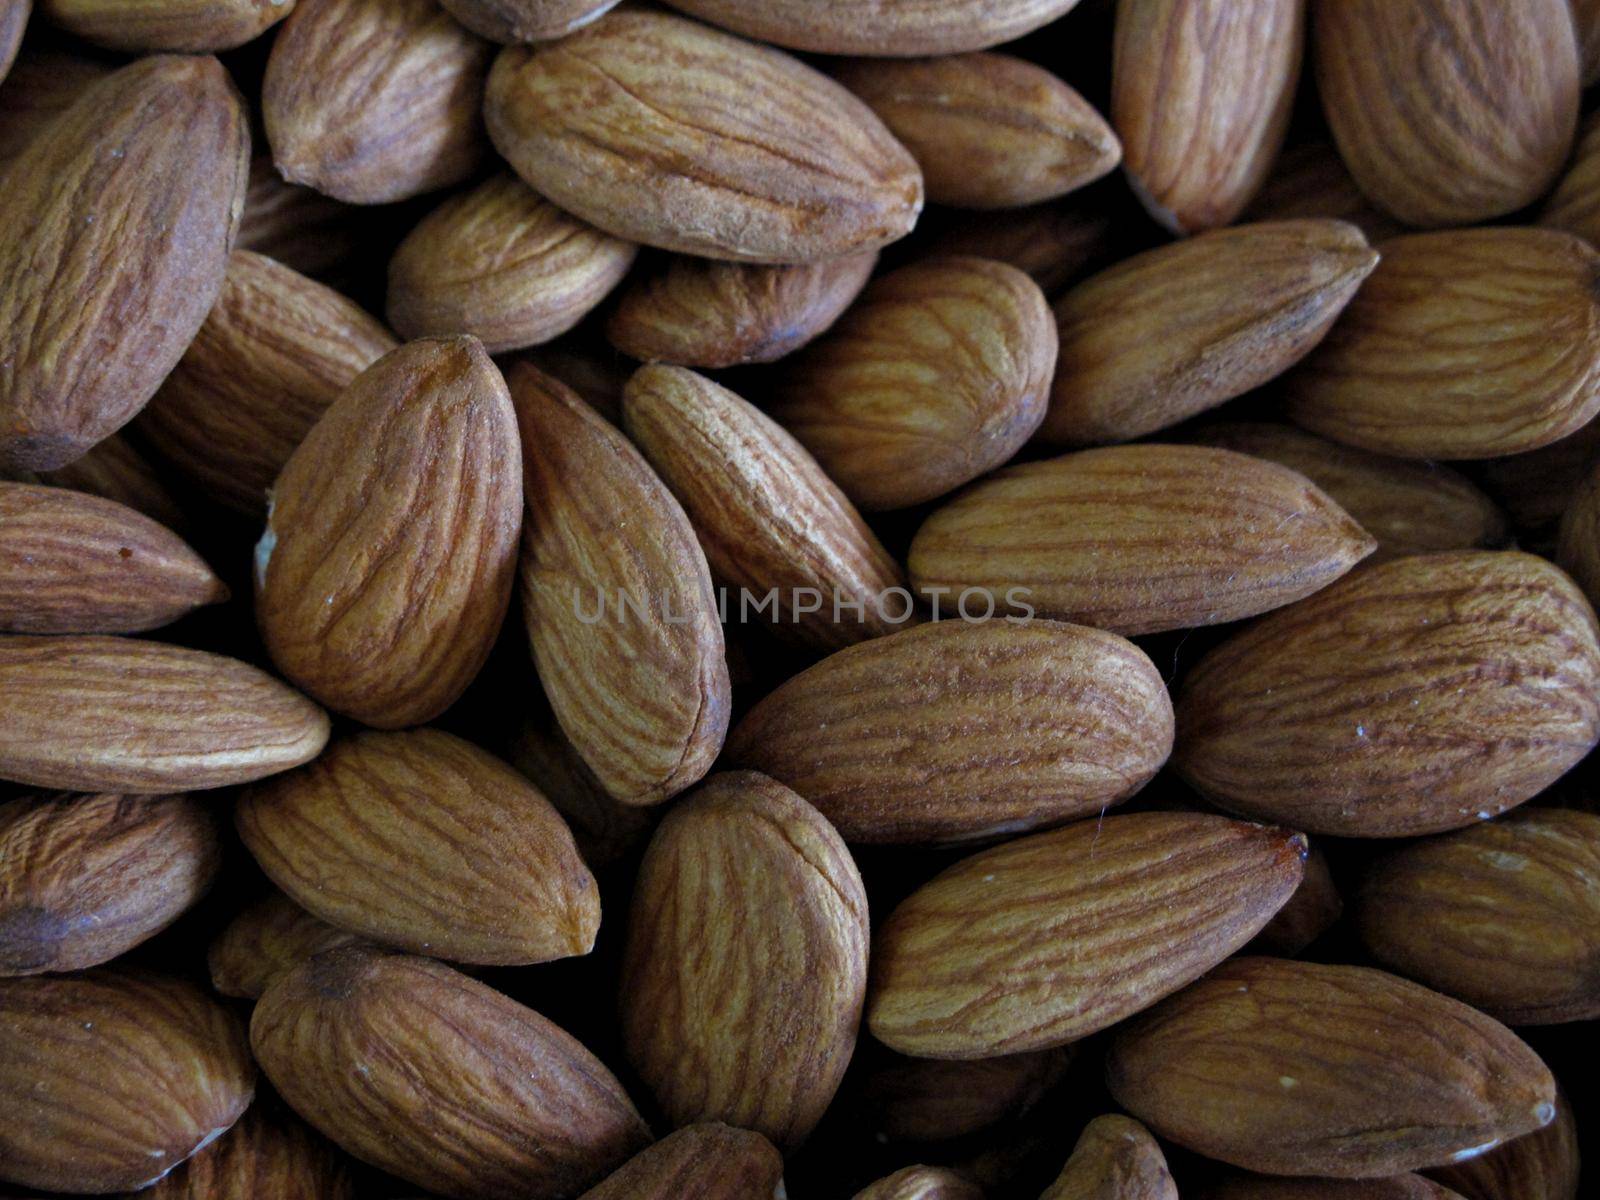 Almonds by aroas